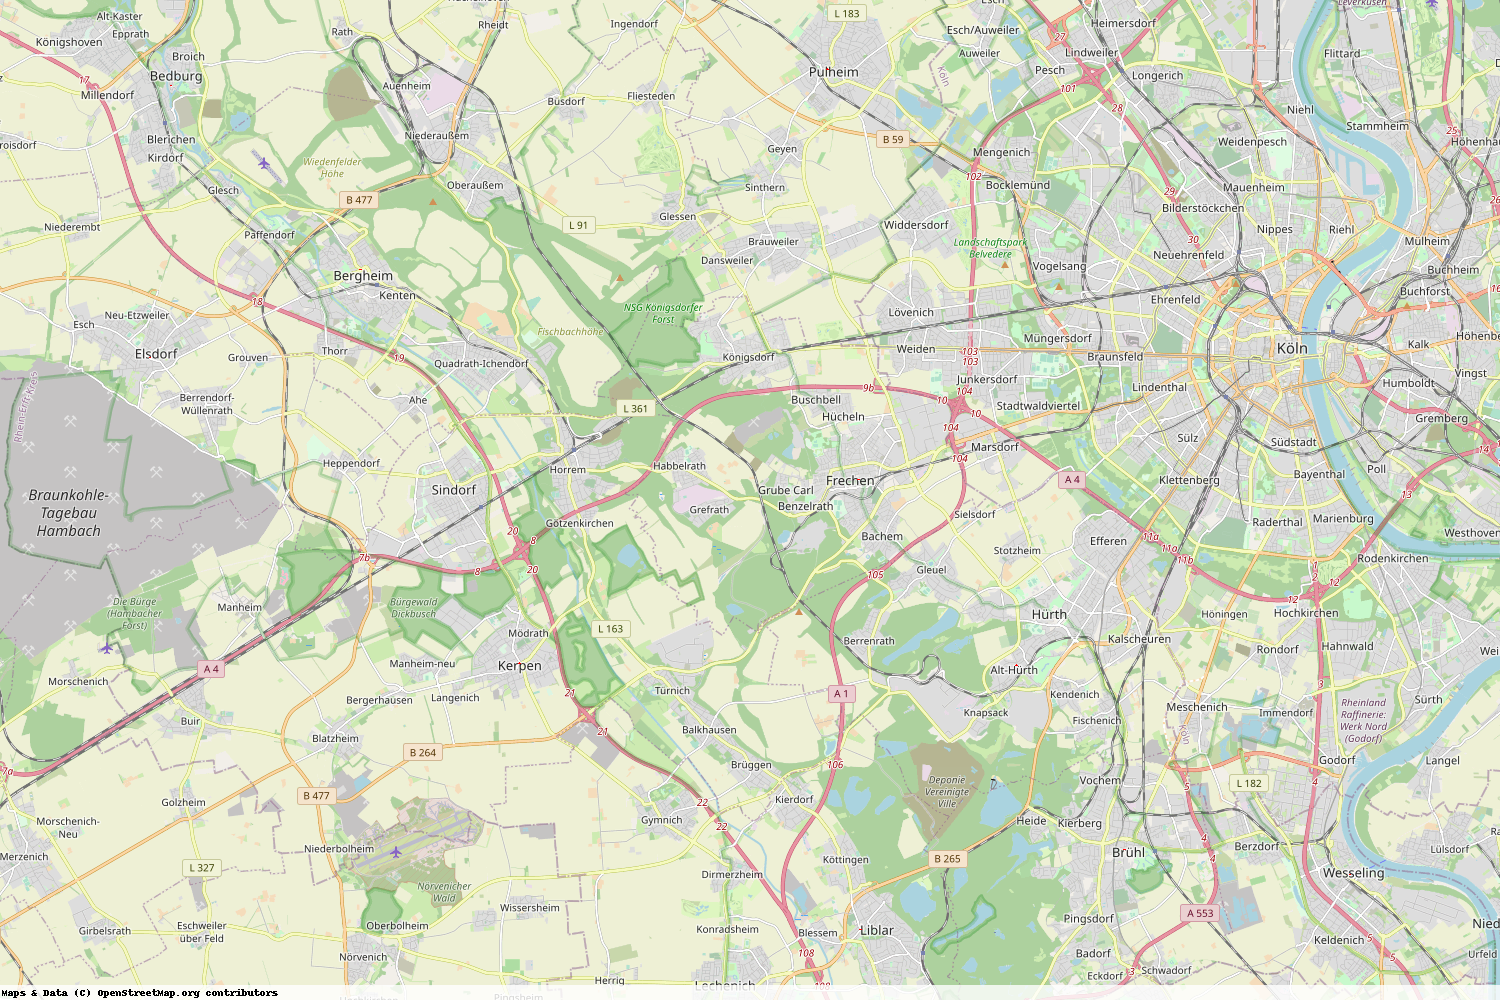 Ist gerade Stromausfall in Nordrhein-Westfalen - Rhein-Erft-Kreis?